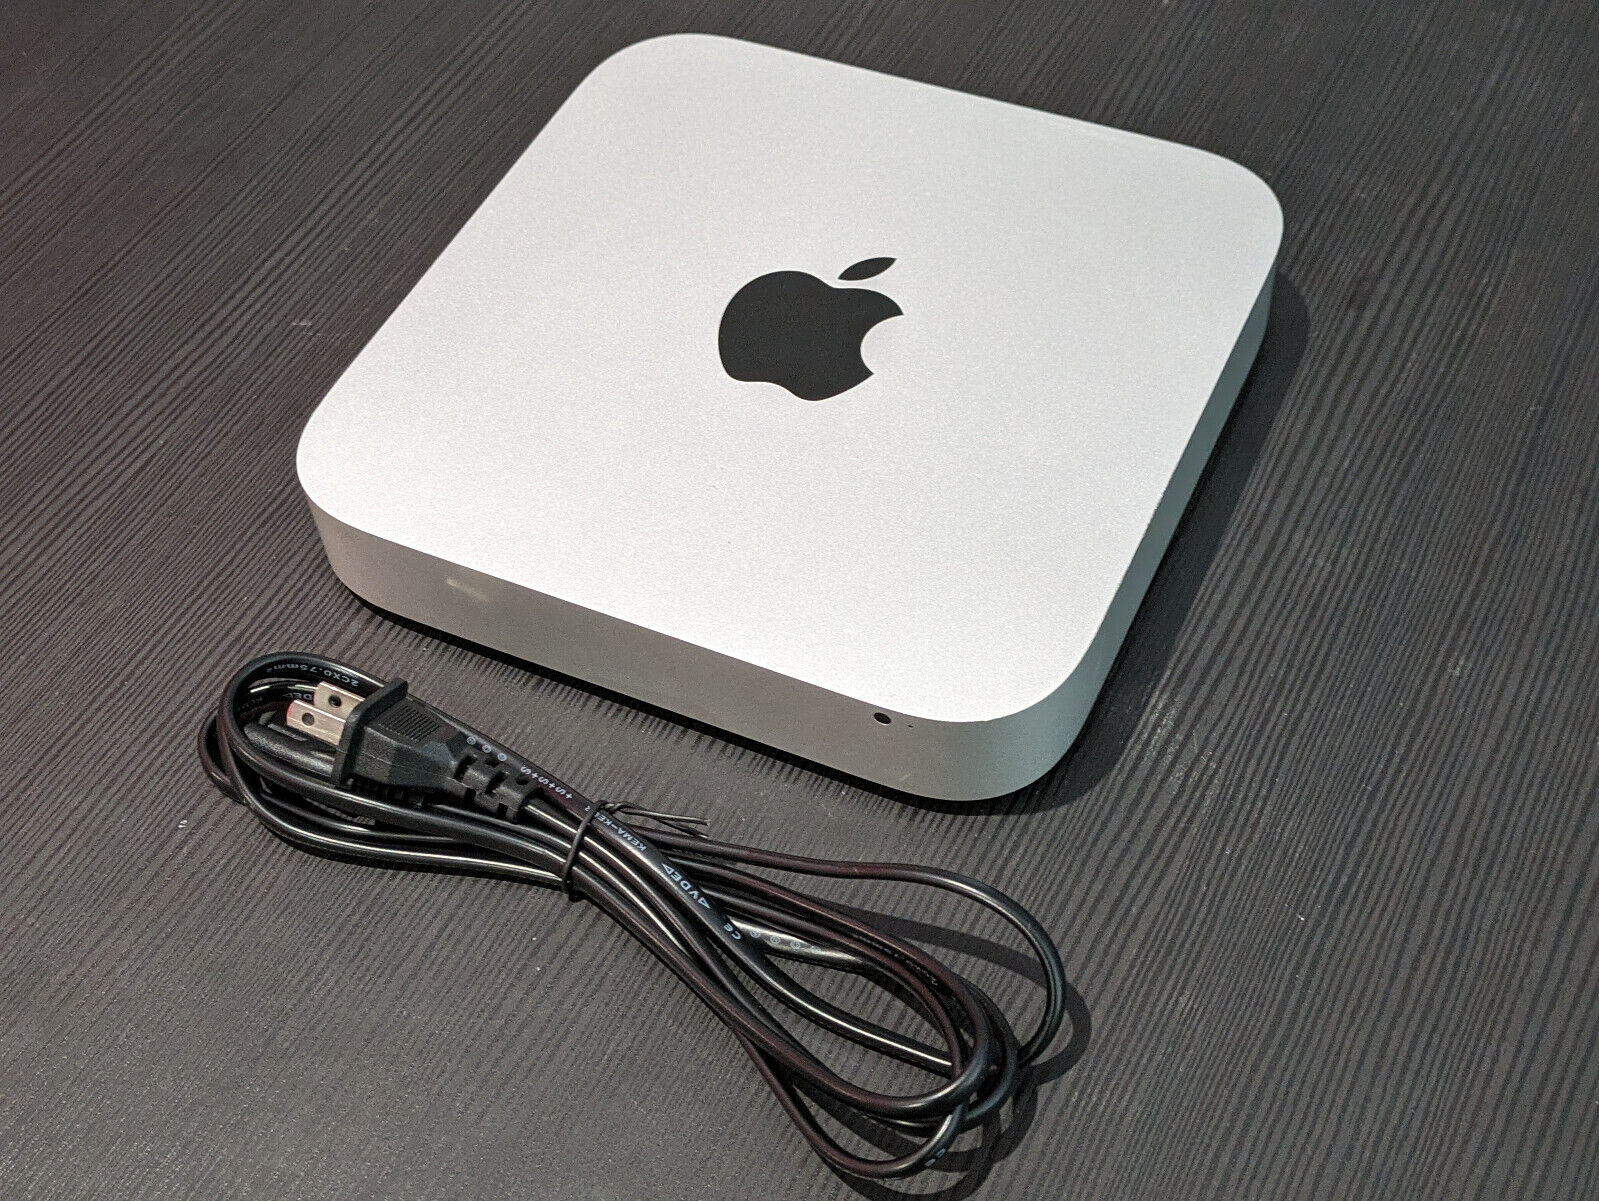 Apple Mac Mini 2012 i7 16GB RAM 128GB SSD Mac OS Catalina